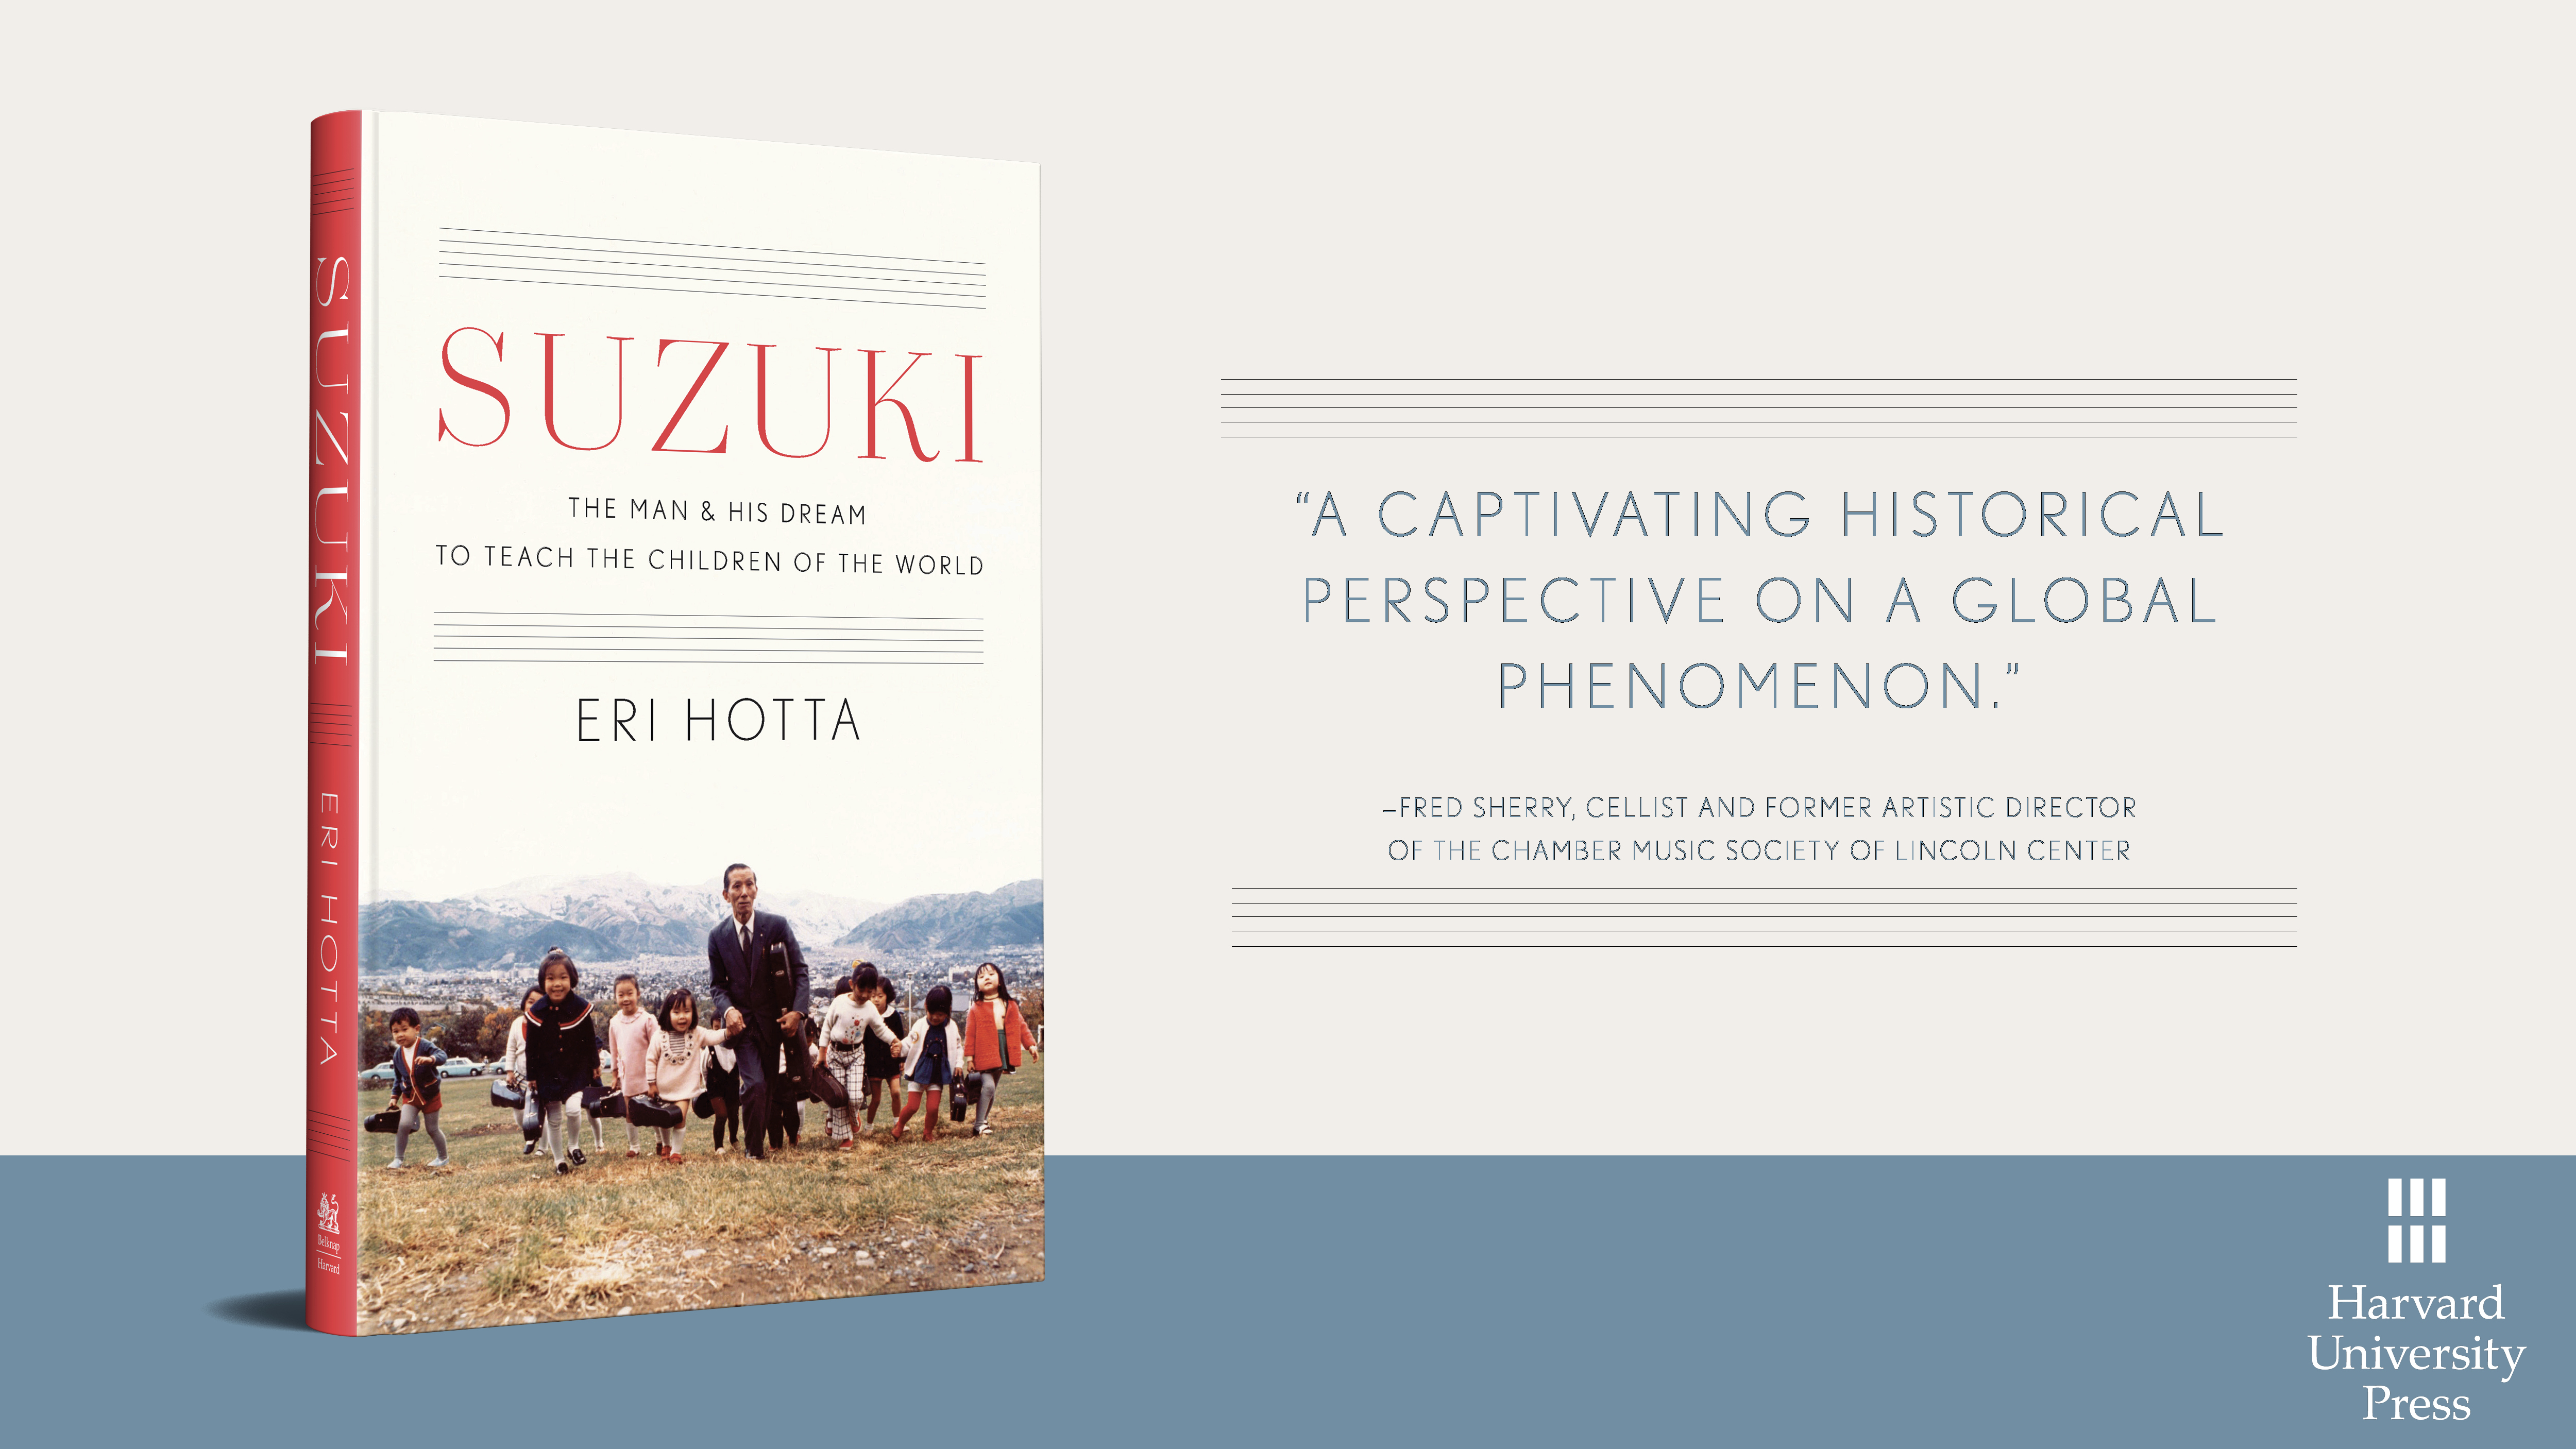 Suzuki: The Man & His Dream to Teach the Children of the World by Eri Hotta